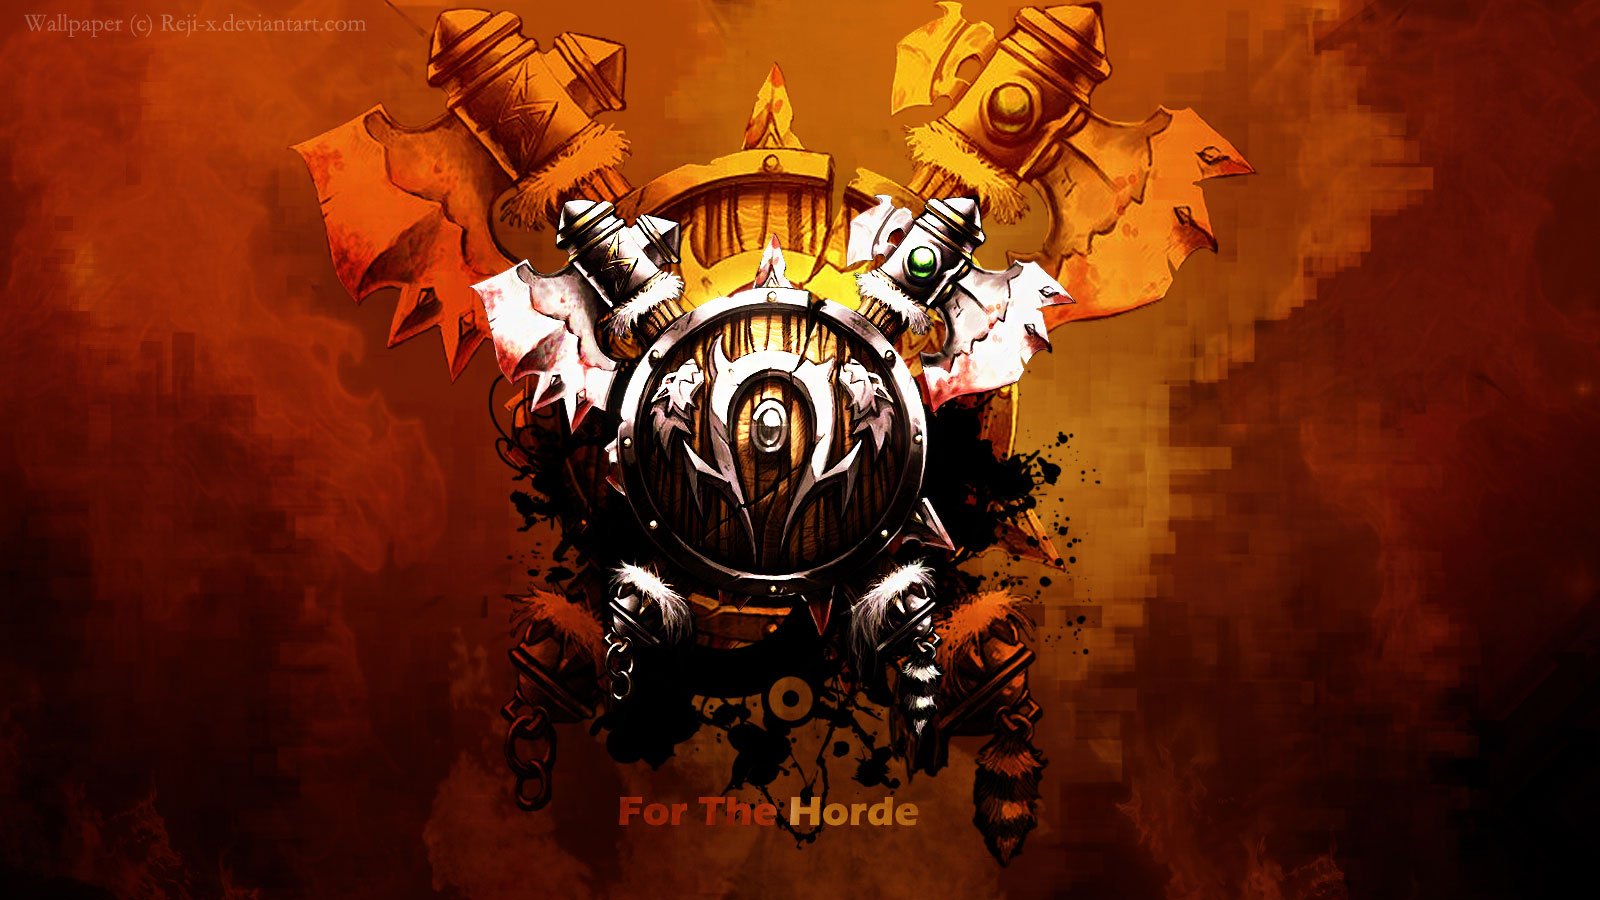 World Of Warcraft Horde Logo Widescreen Wallpaper fond ecran hd 1600x900